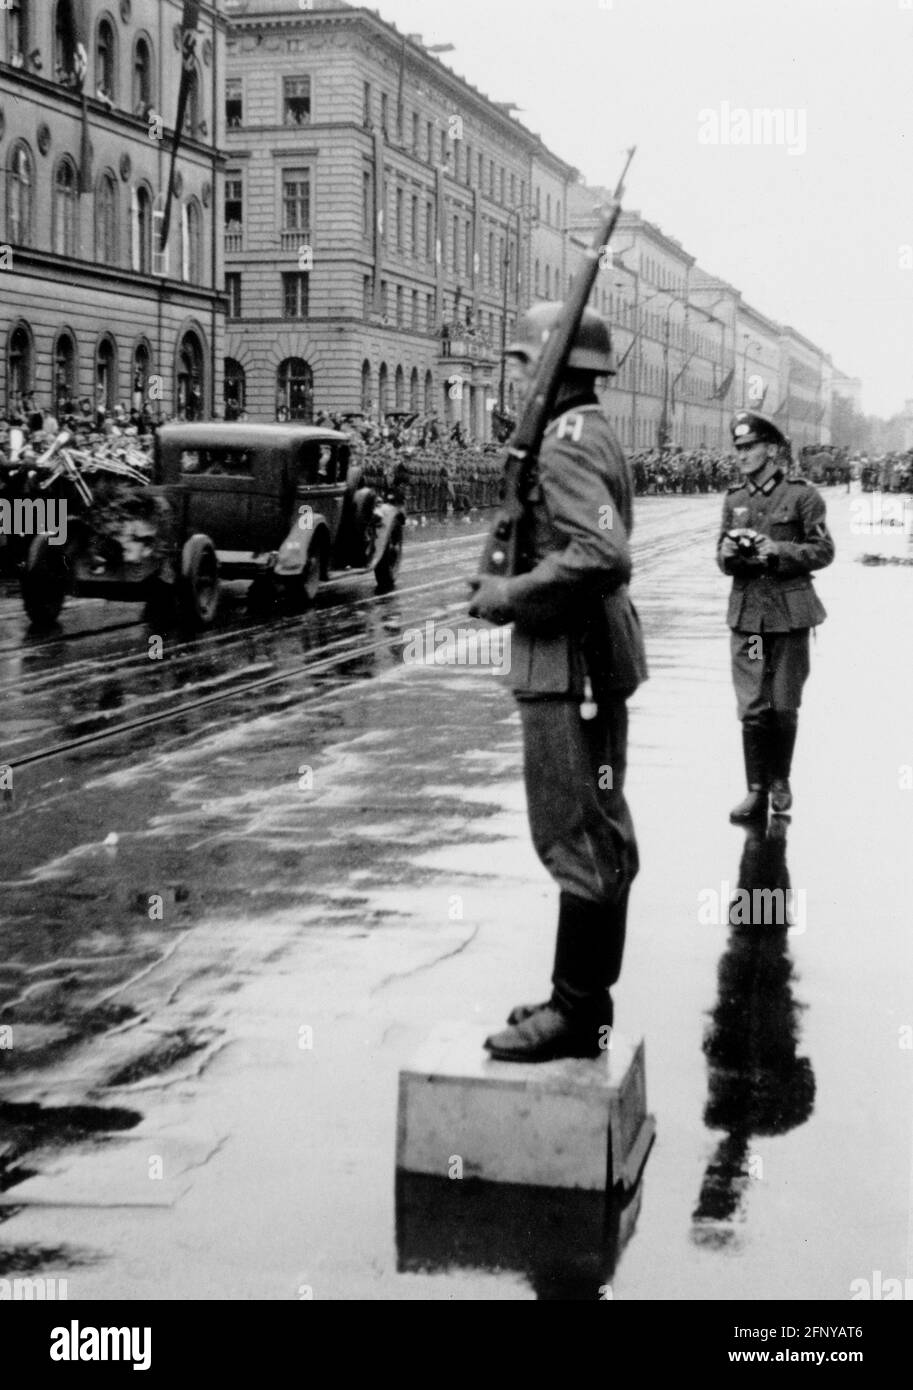 Eventos, Segunda Guerra Mundial / Segunda Guerra Mundial, Alemania, celebración de la victoria después de la Batalla de Francia, desfile de la Wehrmacht en Munich, SÓLO USO EDITORIAL Foto de stock